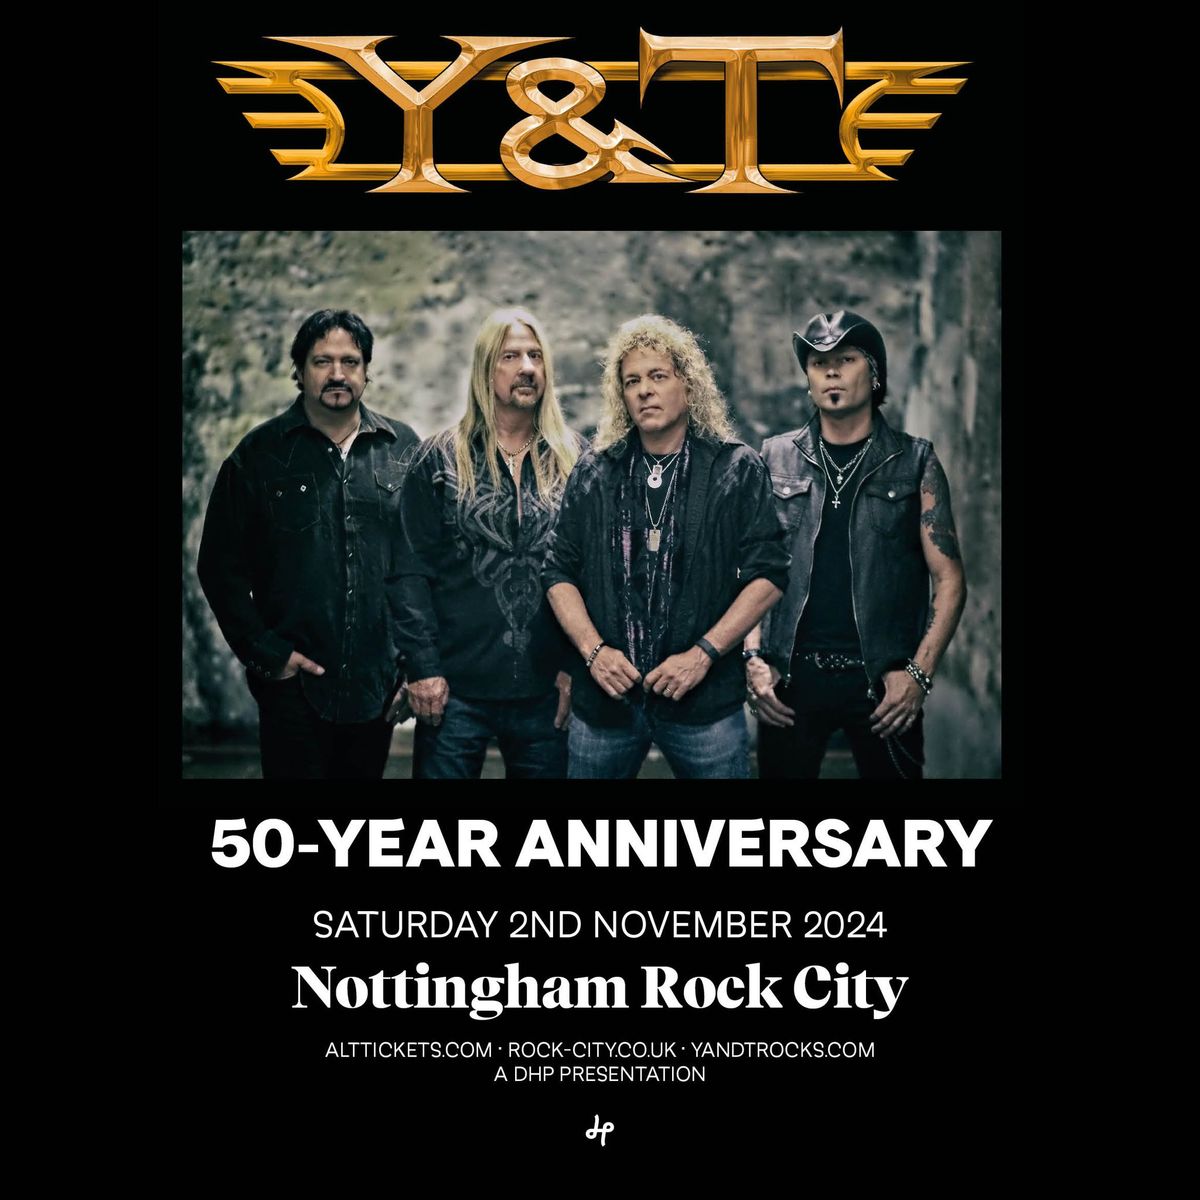 Y&T live at Rock City, Nottingham